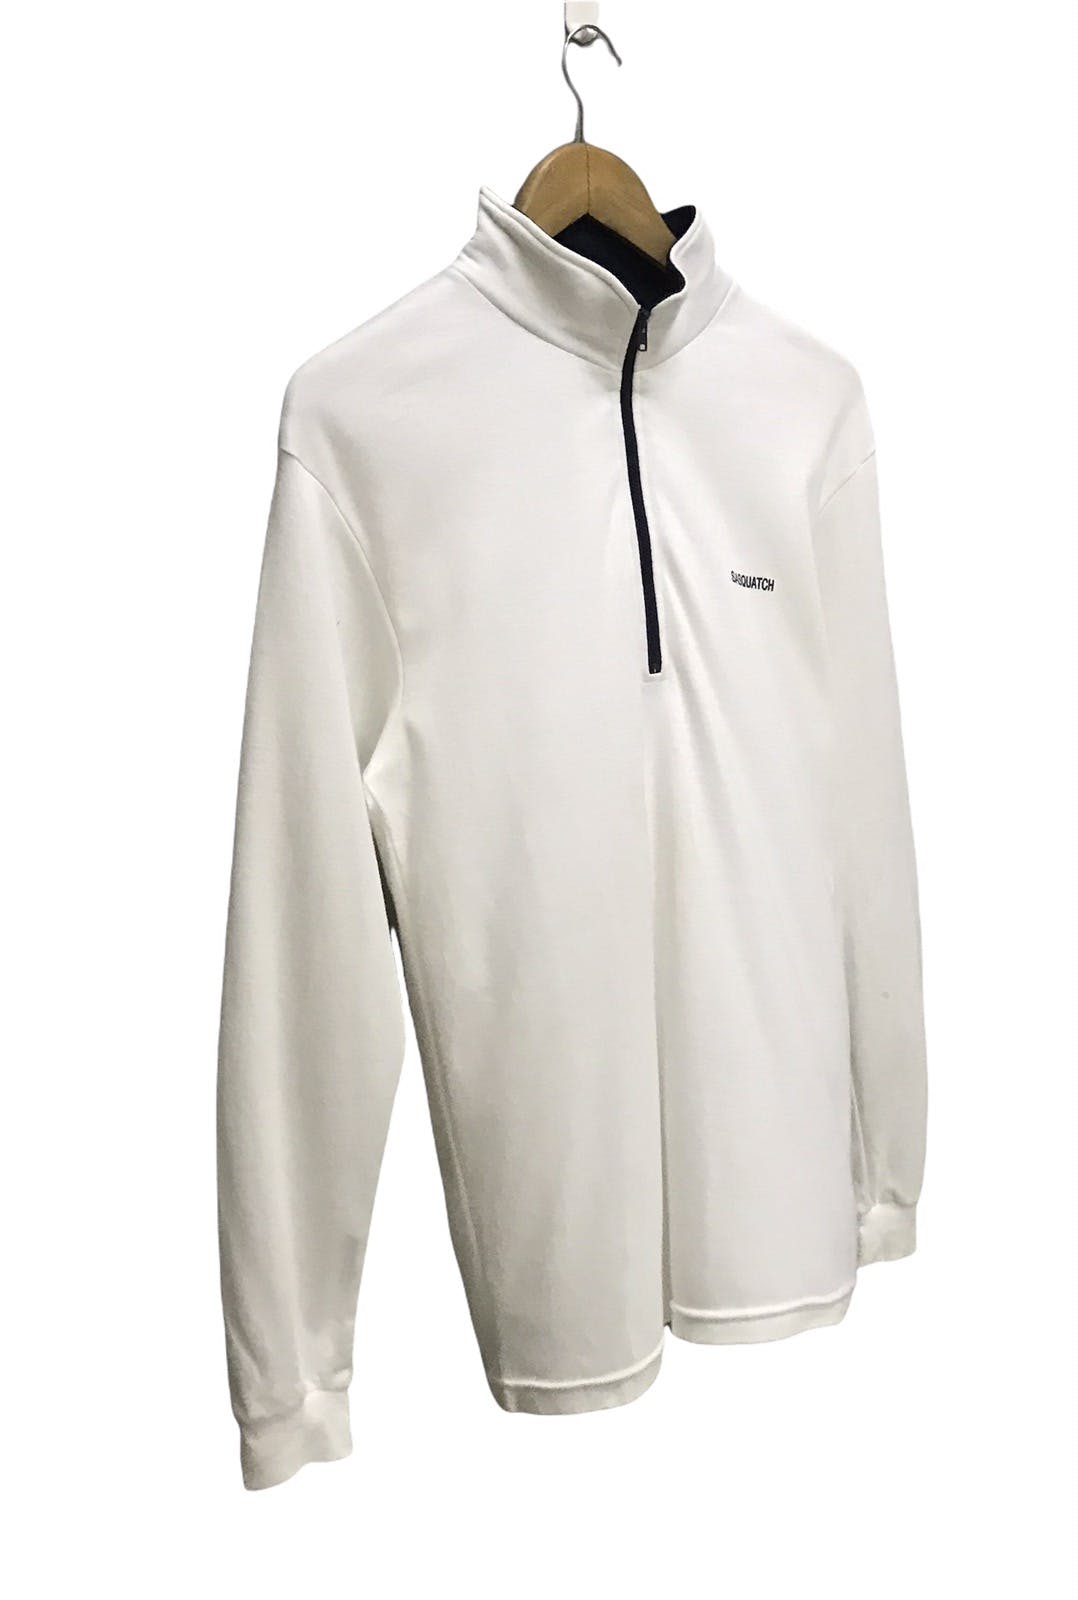 Sasquatch half zipper long sleeve shirt - 3